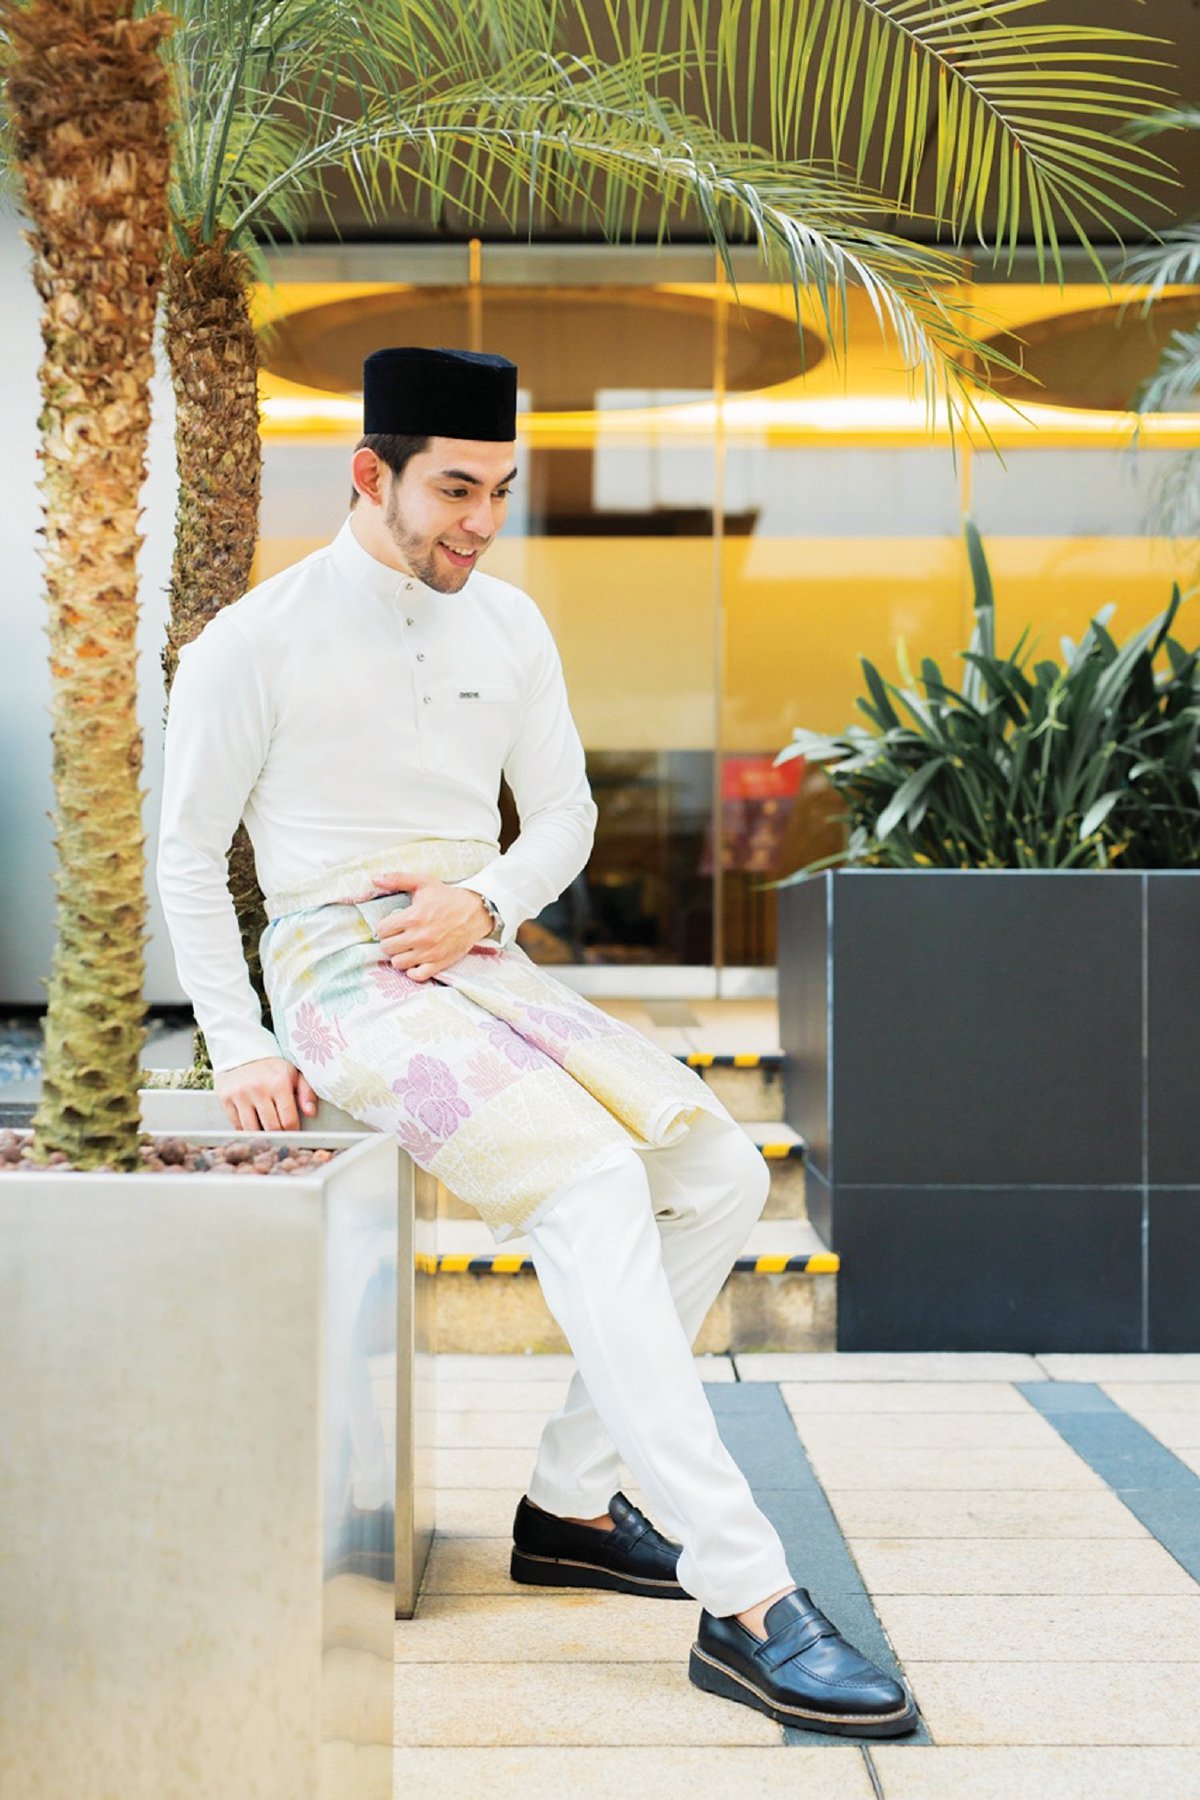 BAJU Melayu perkahwinan disediakan oleh Mohd Fekri untuk pelanggan.